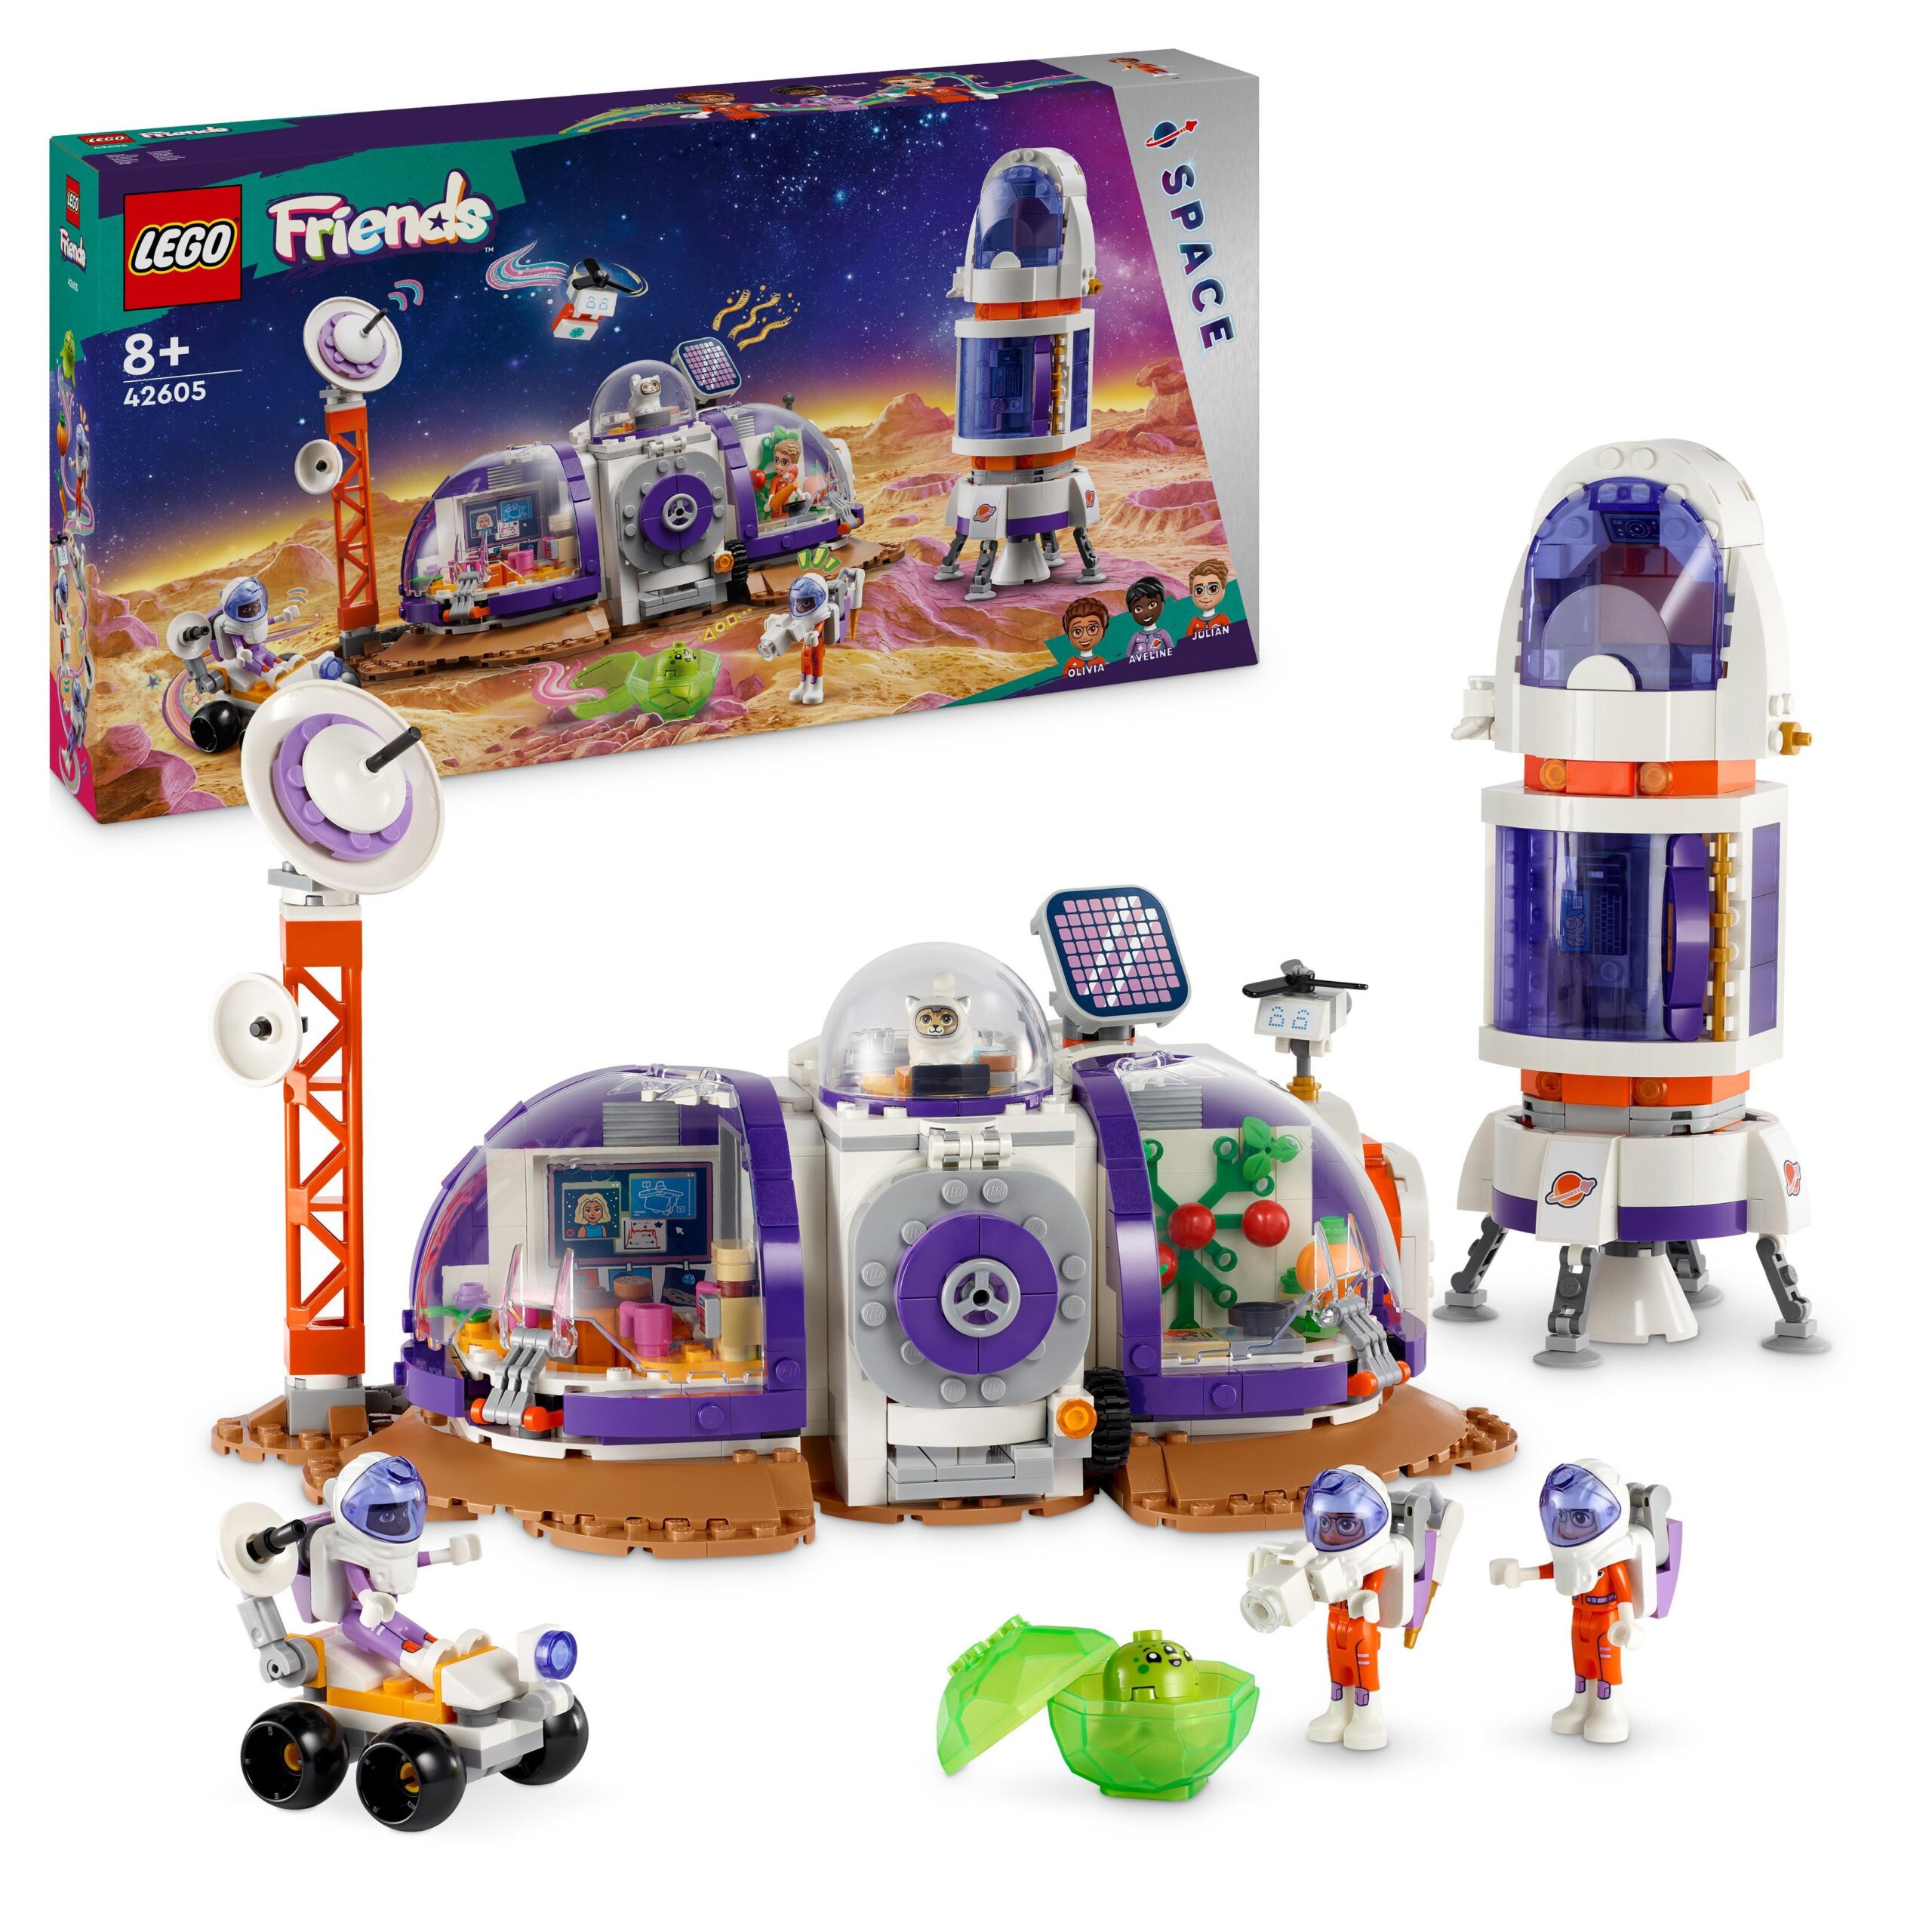 Lego friends 42605 la base spaziale su marte e razzo, giochi per bambini di 8+ anni con 4 mini bamboline, rover e accessori - LEGO FRIENDS